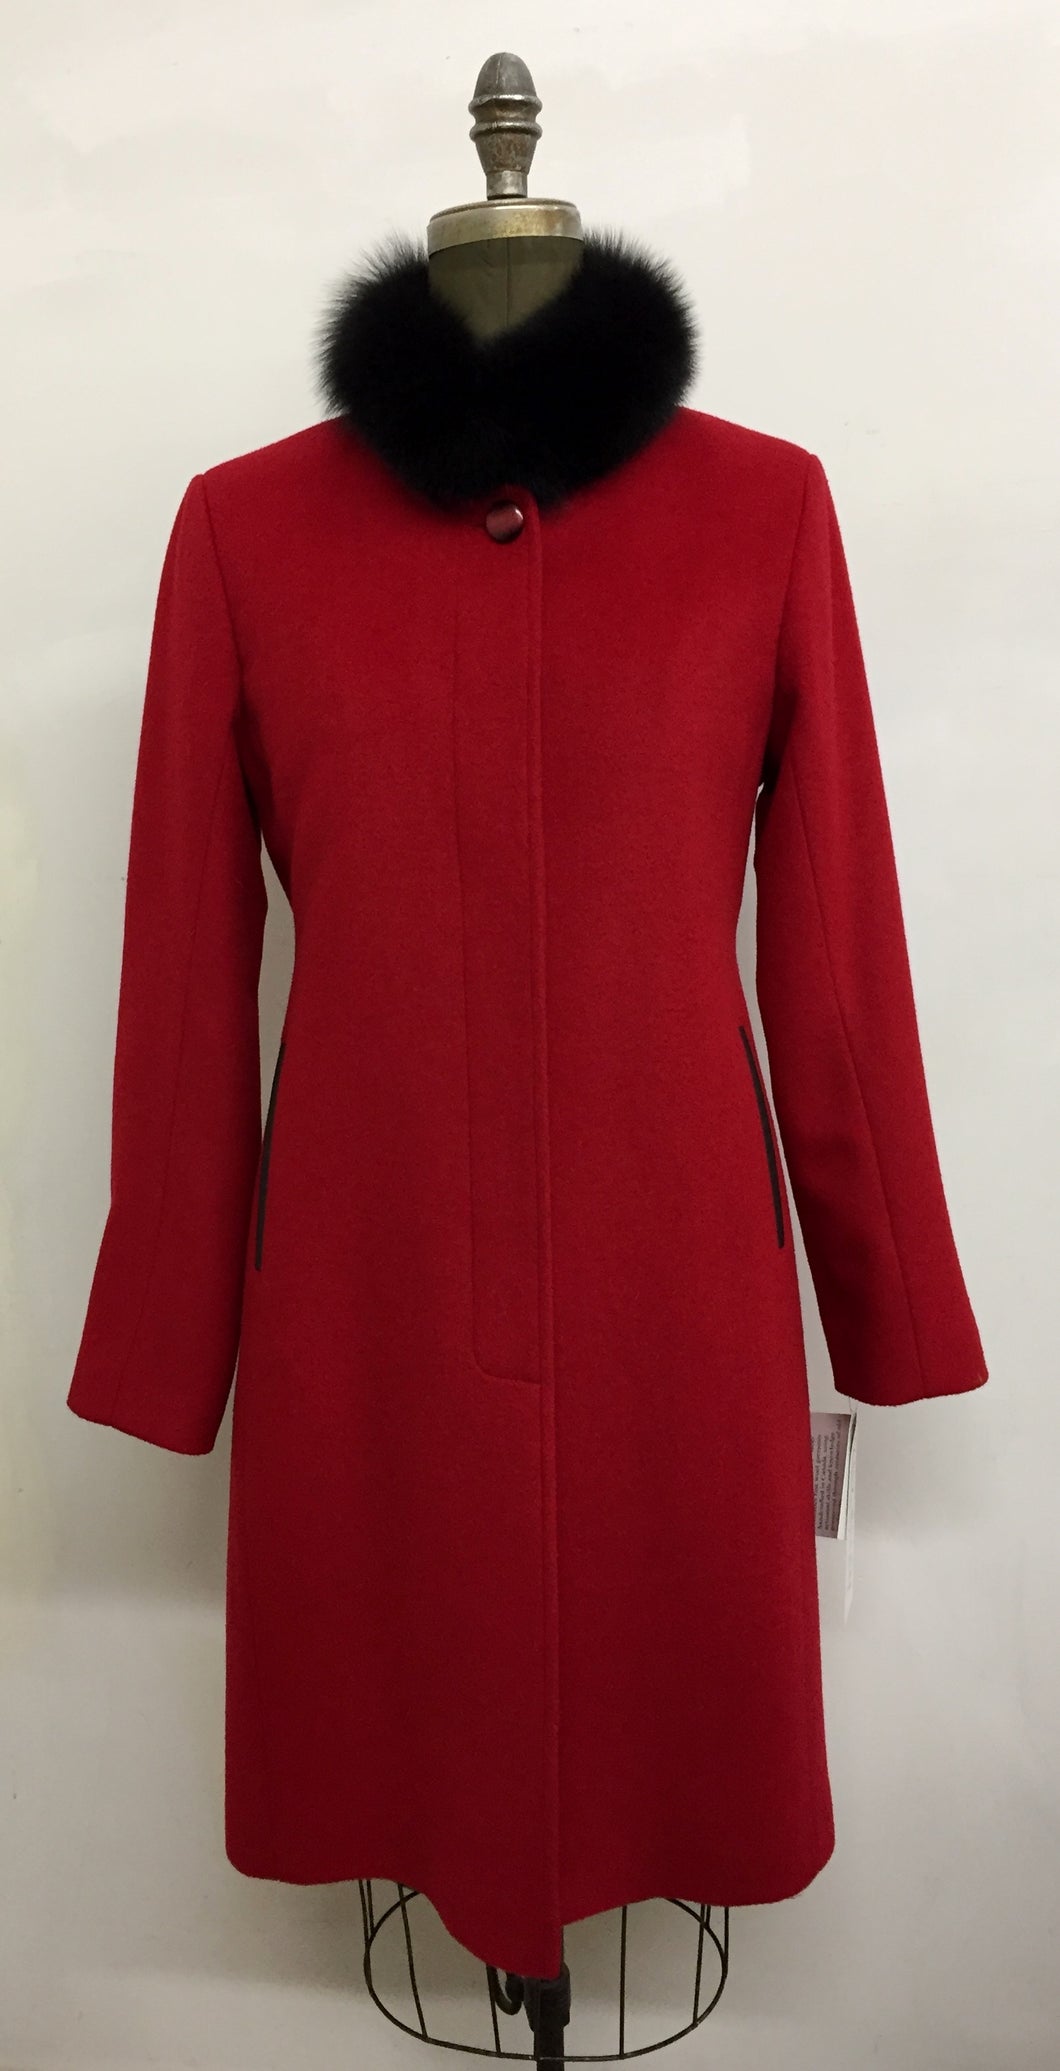 Gabriella Coat - 50% Cashmere & Wool Blend